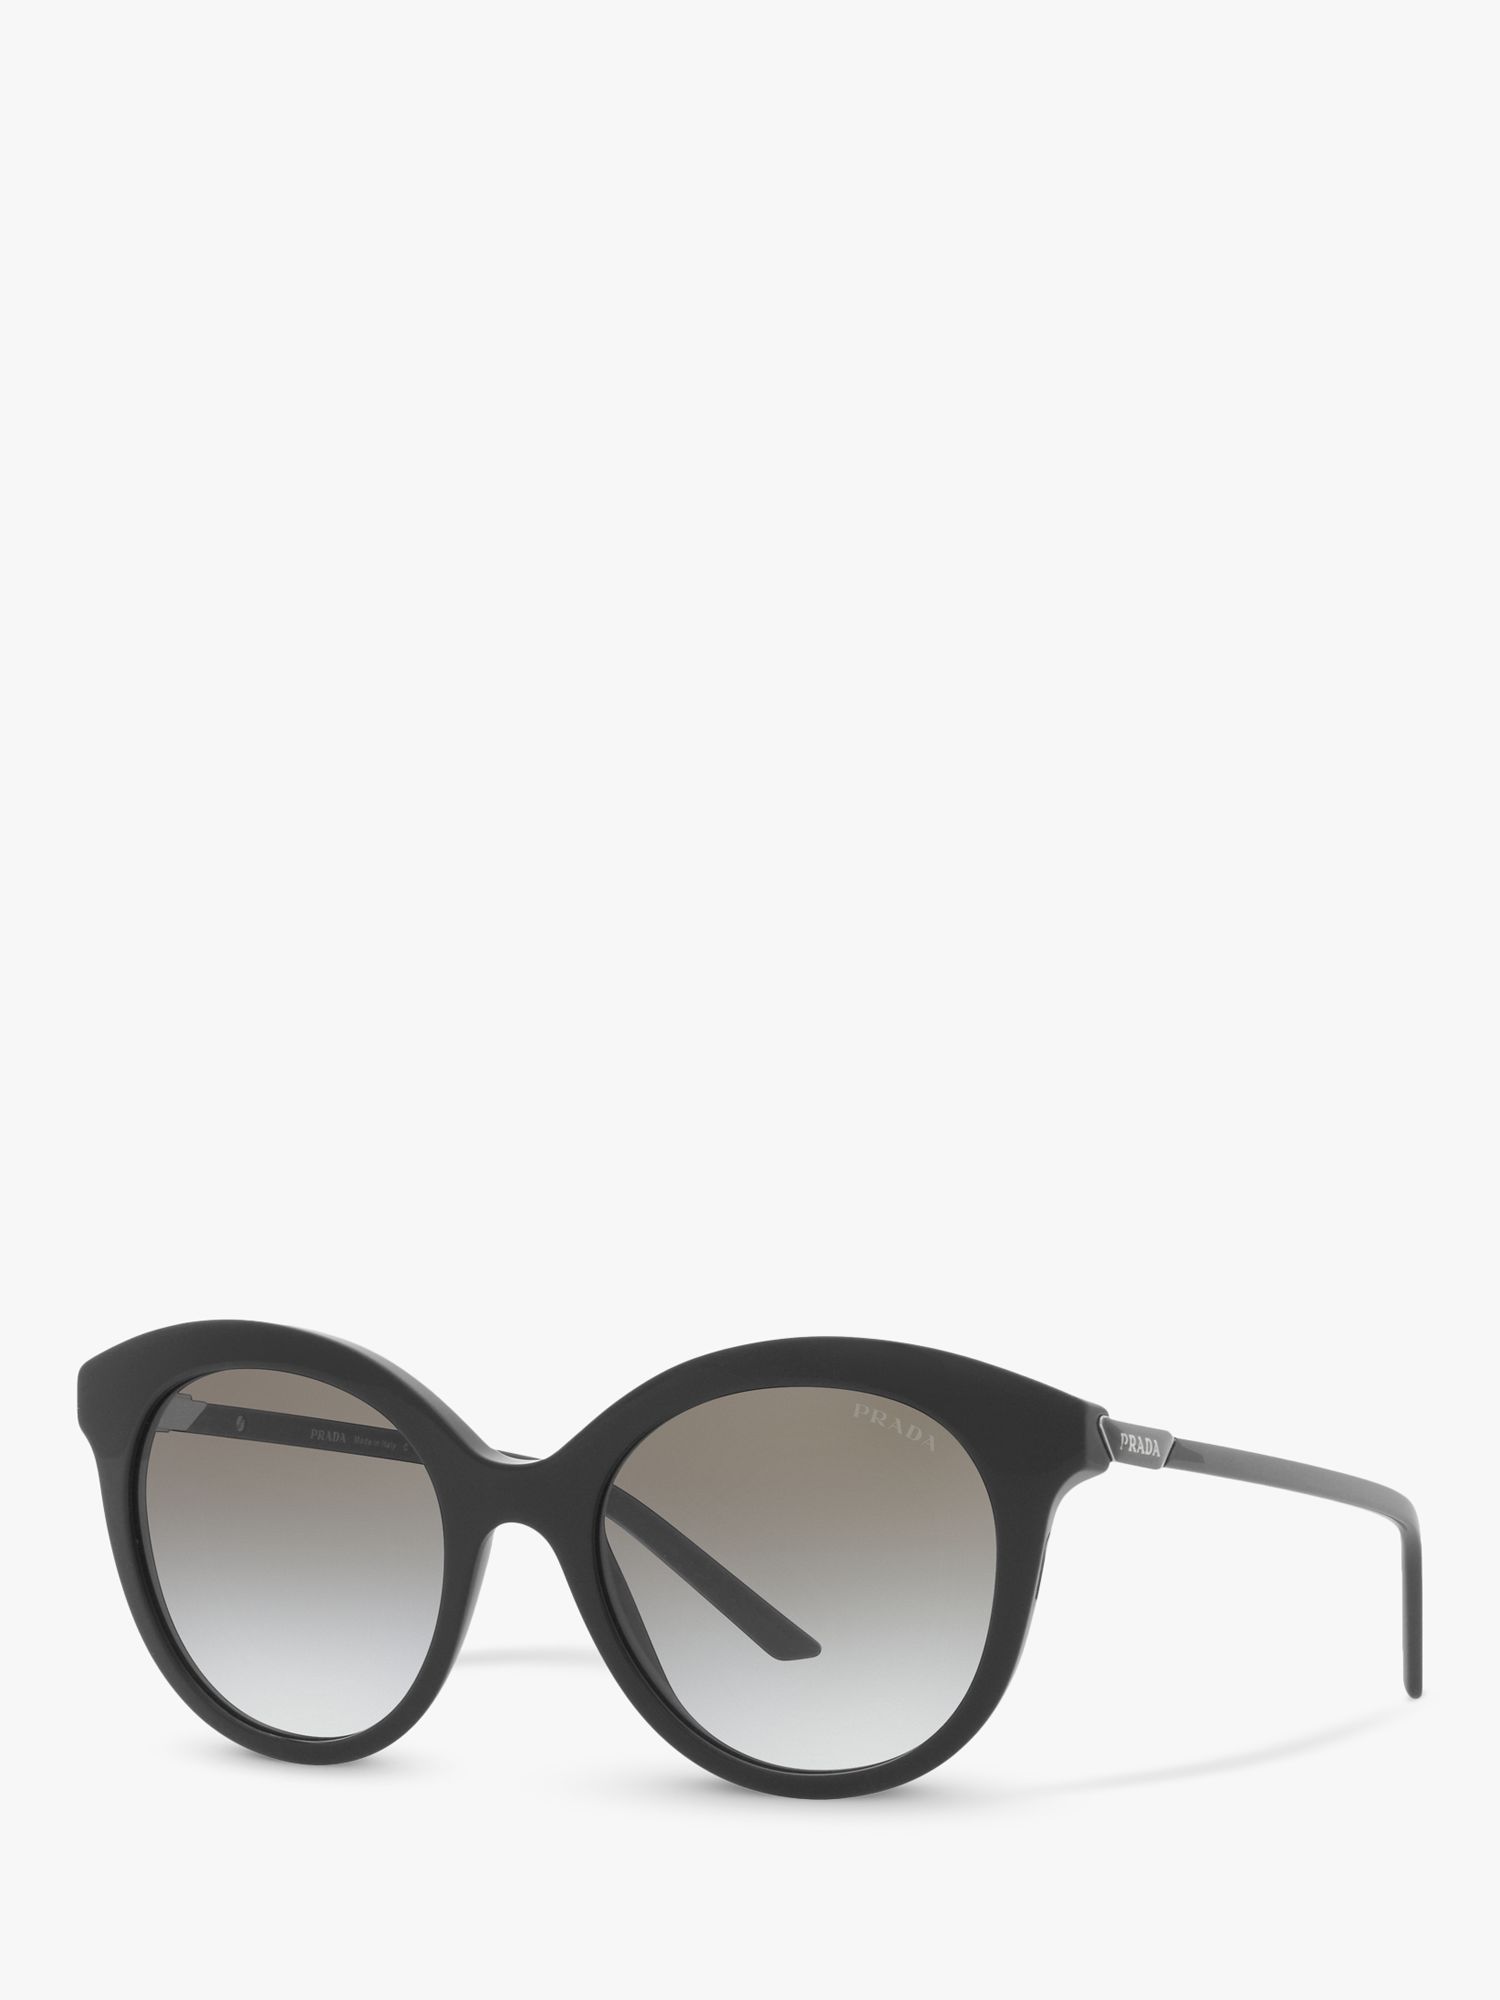 Женские круглые солнцезащитные очки Prada PR 02YS, черные/серые